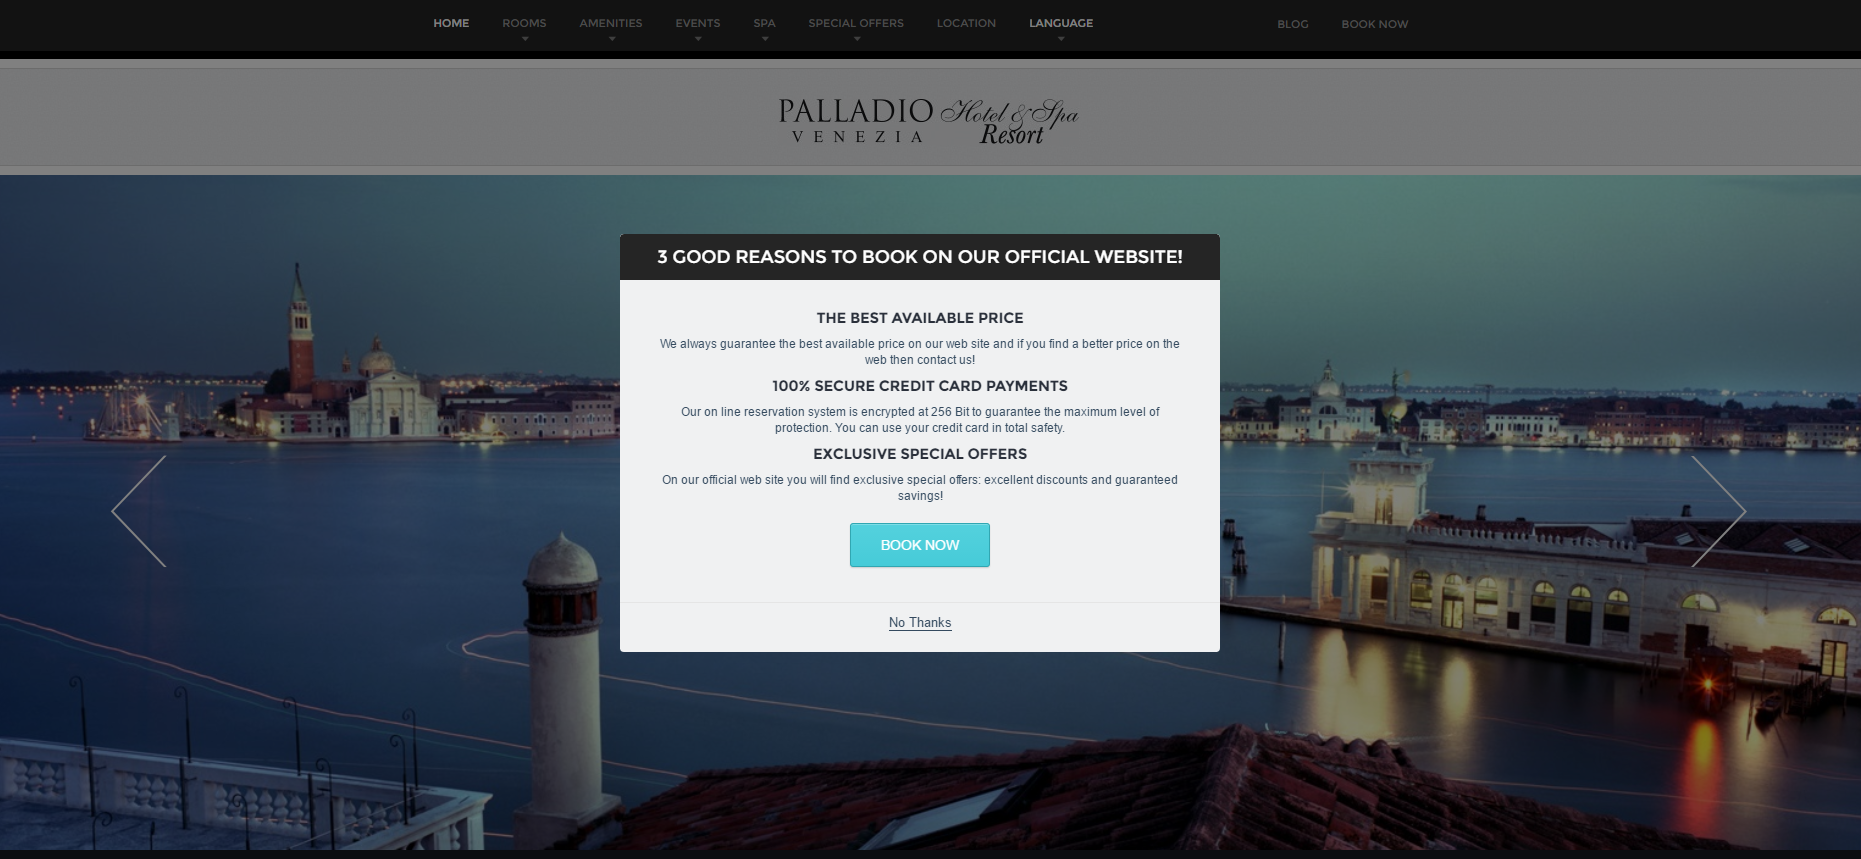 Εικόνα που δείχνει την ιστοσελίδα του ξενοδοχείου Palladio